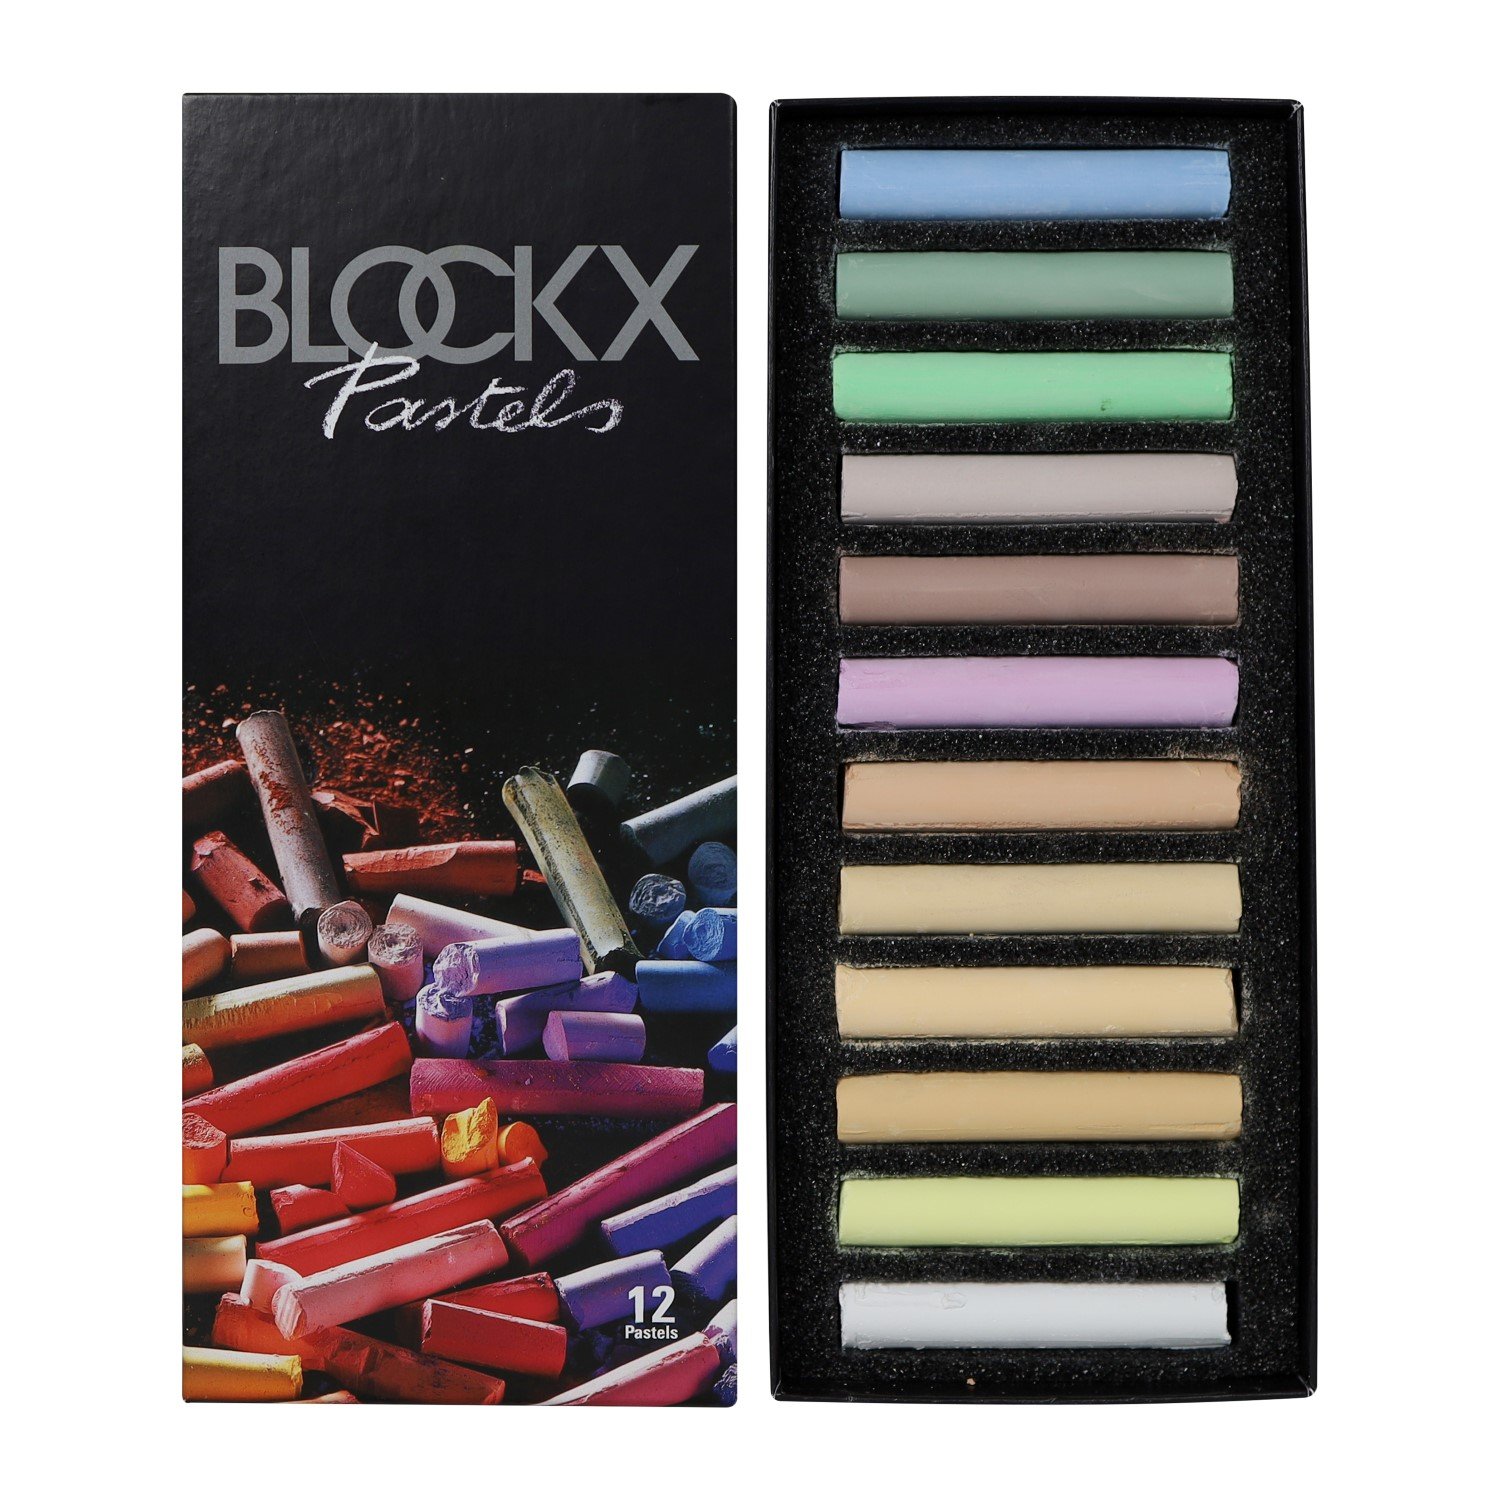 Blockx Toz Pastel Boya Ve Setler - Thumbnail